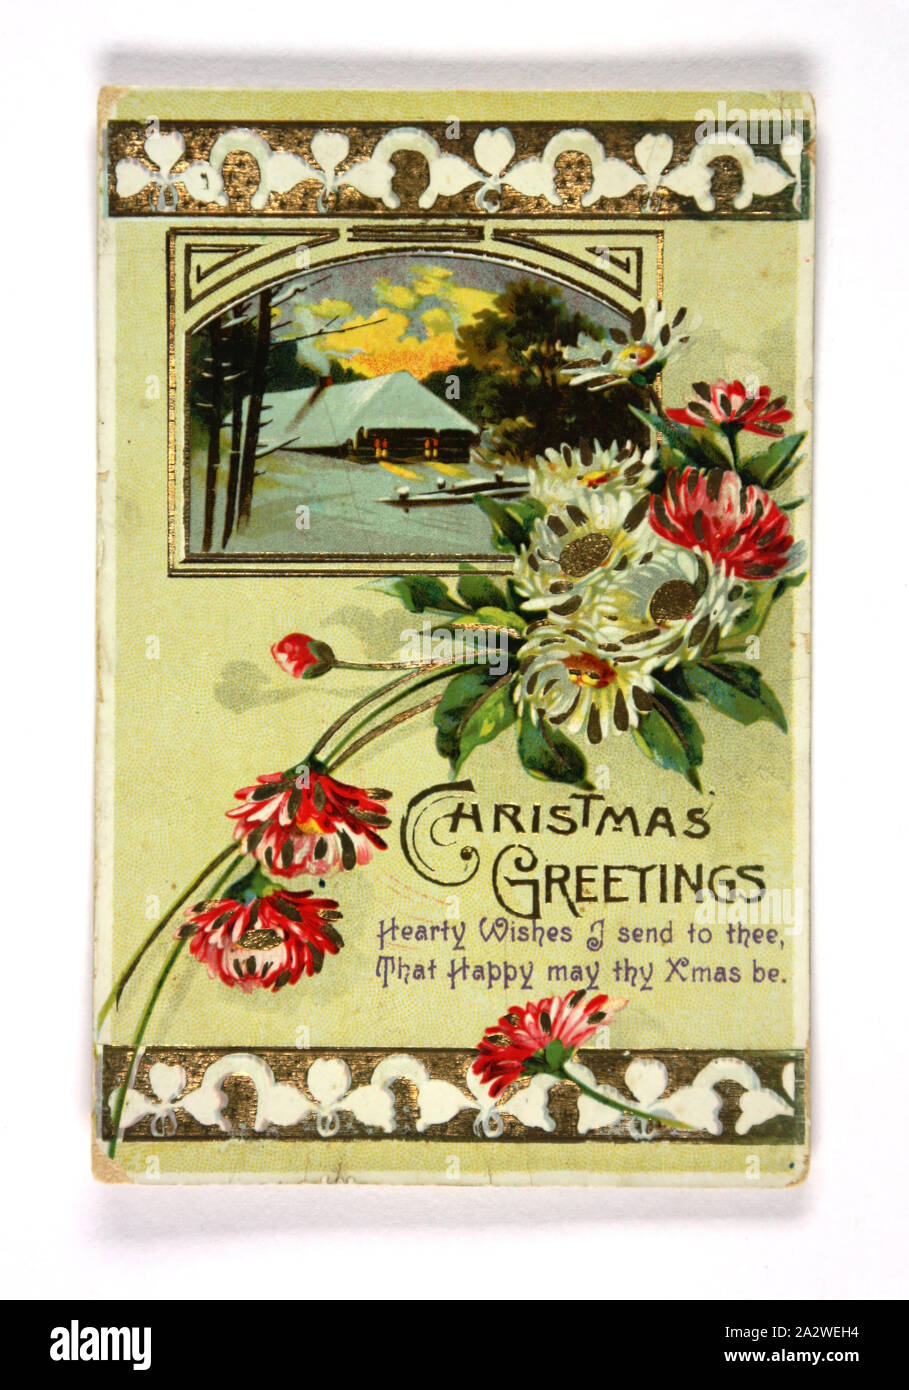 Weihnachtskarte - William Nairn zu Familie, ca. 1907-1915, Postkarte mit Weihnachten card Design auf der Vorderseite, geschrieben von William Nairn zu seiner Familie, die Zeit zwischen 1907 und 1915. William Nairn diente später im Ersten Weltkrieg und war in den Gräben von Frankreich im Juli 1918 ermordet Stockfoto